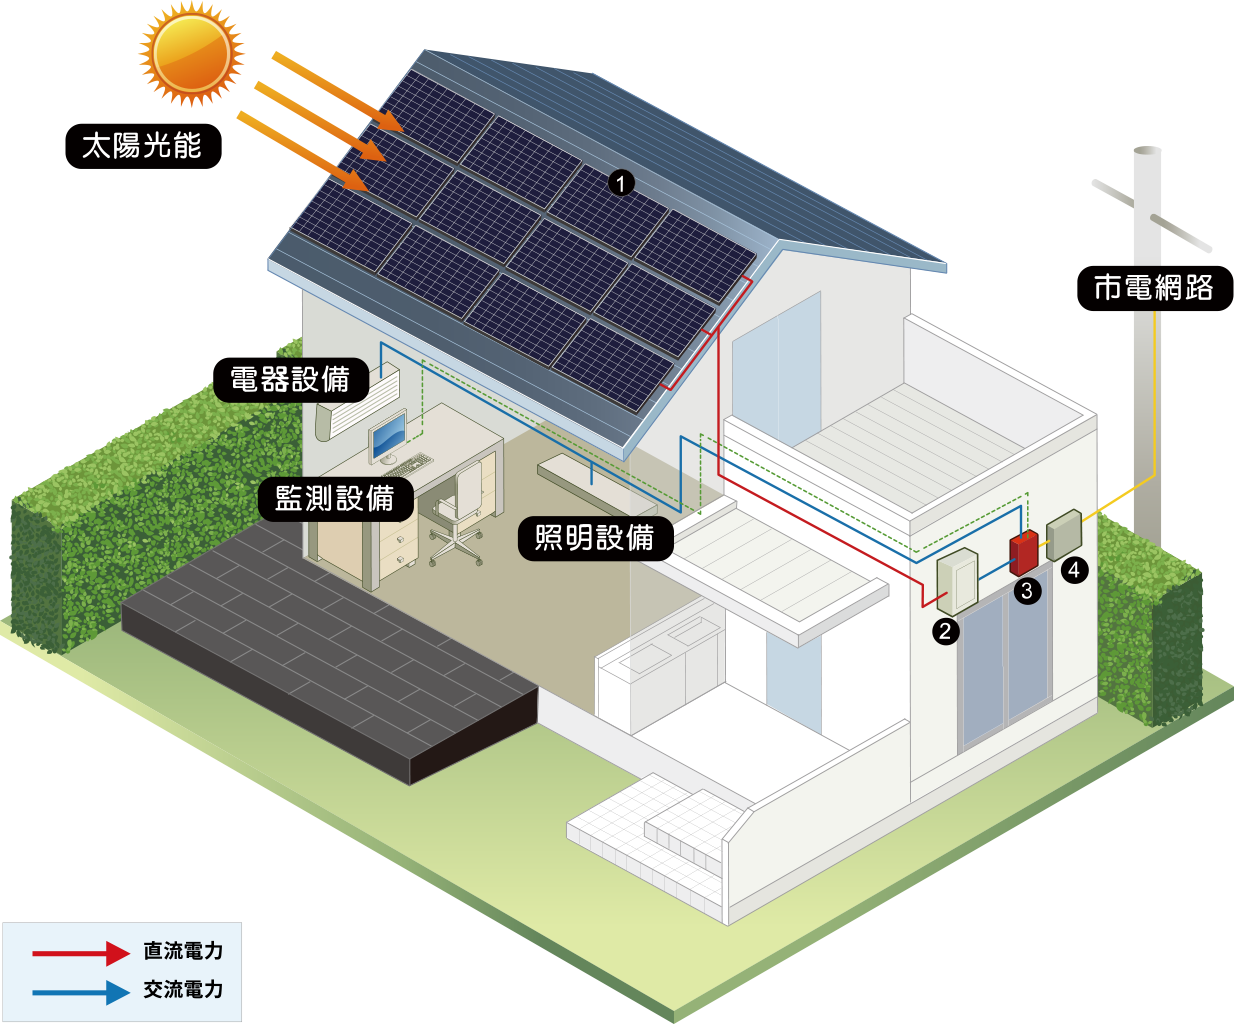 太陽能併聯型系統-主要作為省電用途，在電力公司可提供電力的地方裝設這樣的系統，因為太陽能提供免費的電力，因此長期可以有效降低電力費用。這樣的系統一般不配置蓄電池